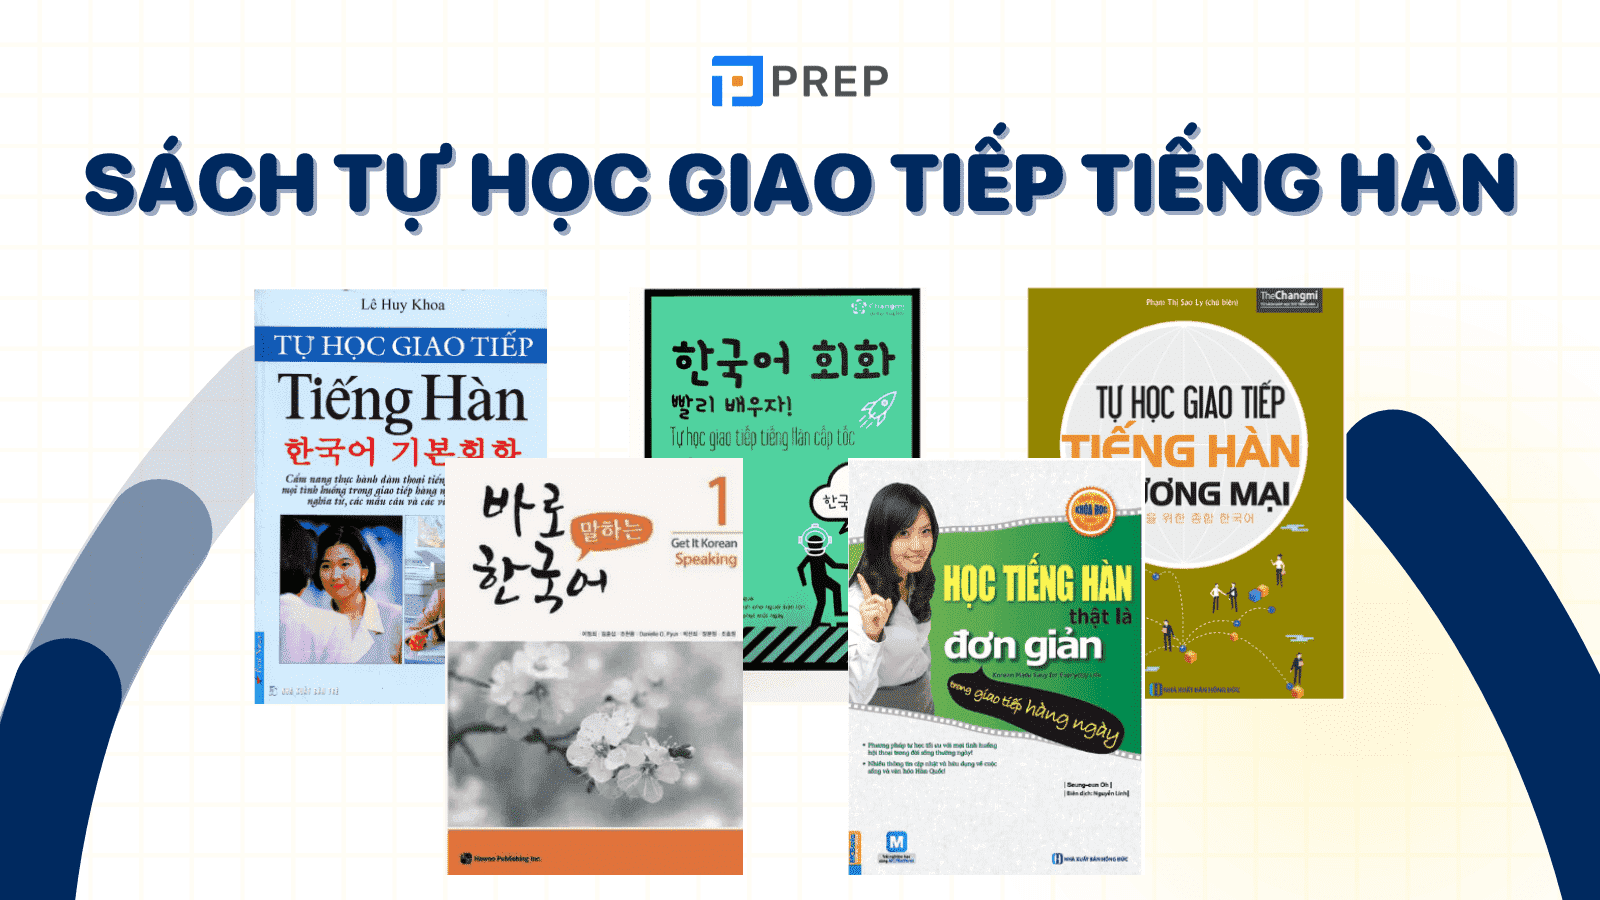 Bỏ túi 5 sách tự học giao tiếp tiếng Hàn nâng cao trình độ nhanh chóng